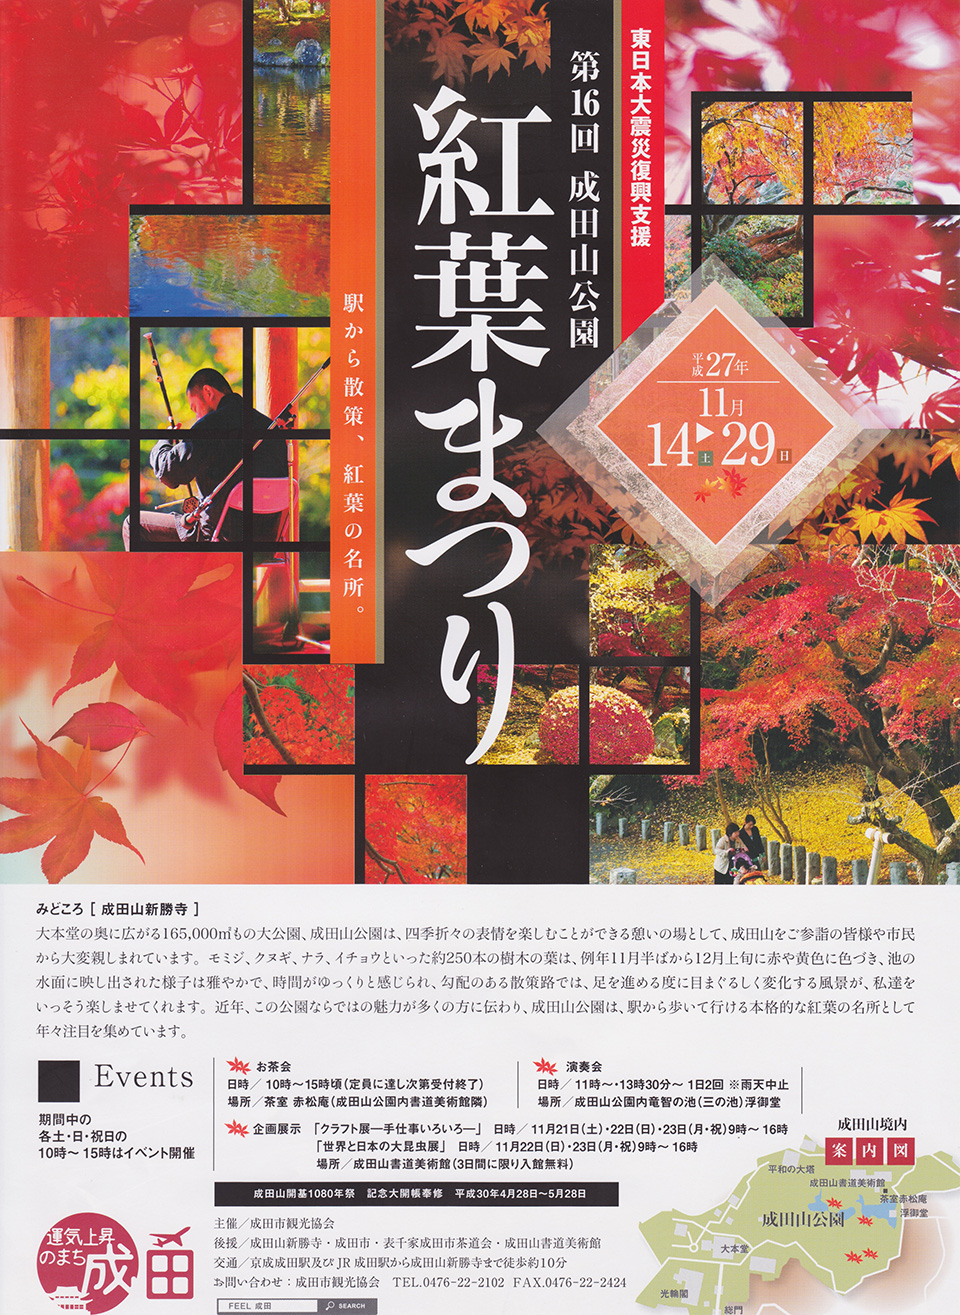 紅葉まつりがはじまるよ 期間中 11 14 11 29 の土 日 祝日にはイベントも開催 成田リポート